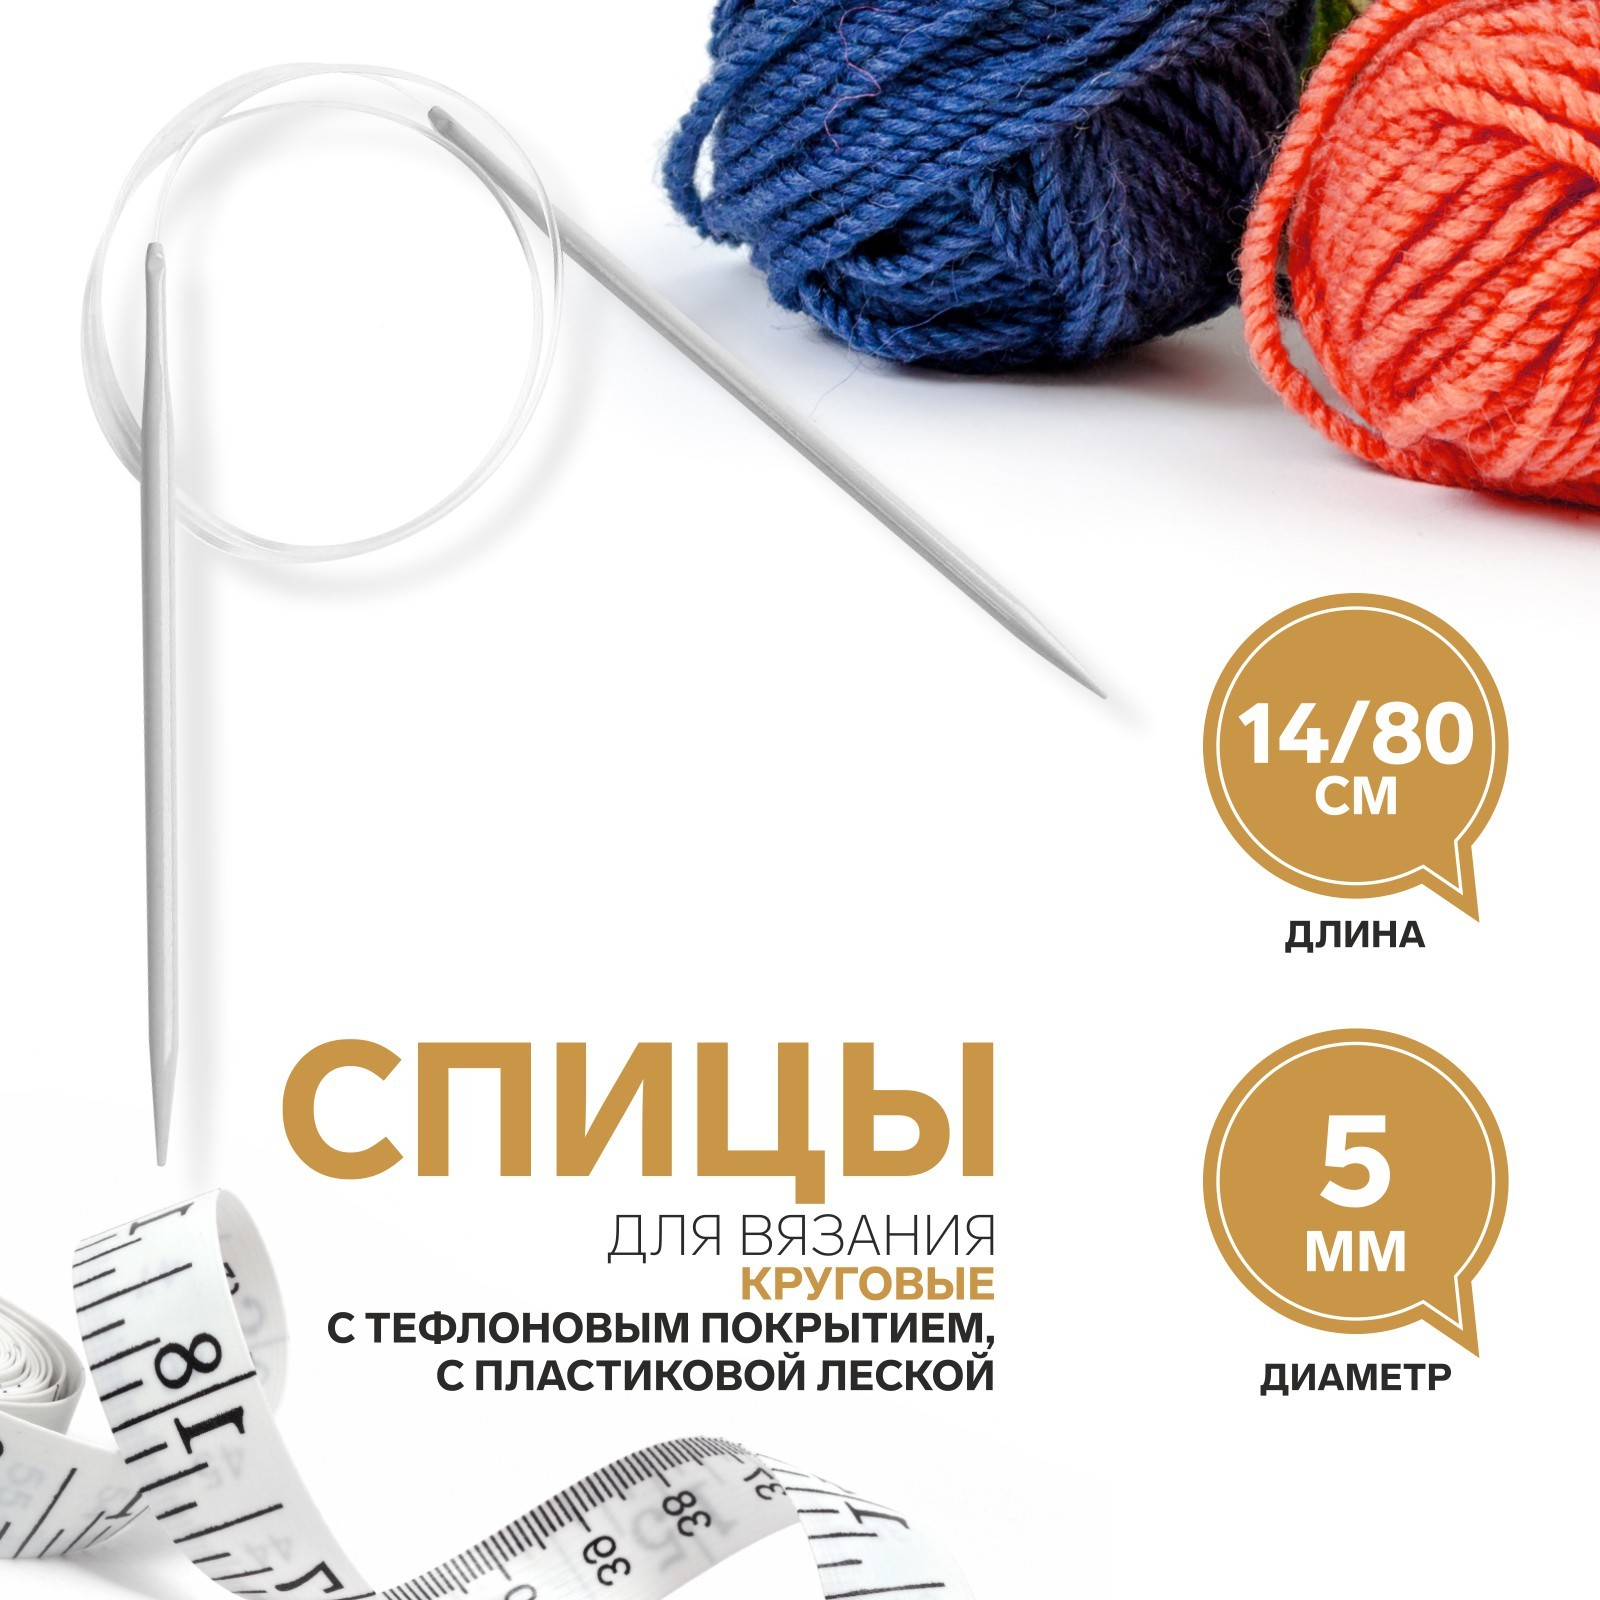 Спицы: купить спицы для вязания в Краснодаре